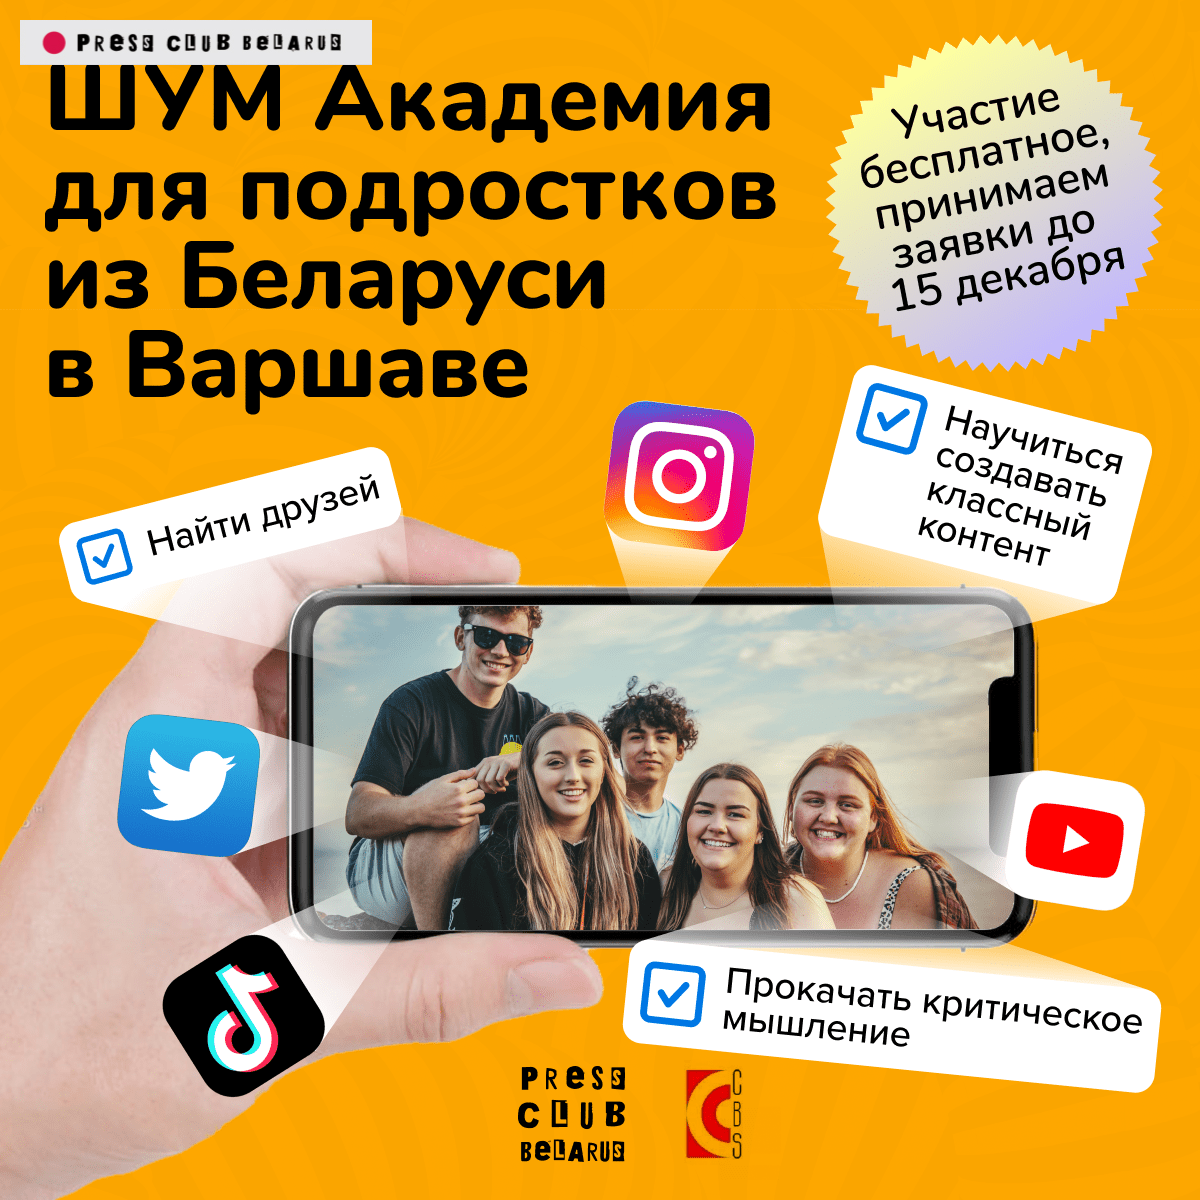 «ШУМ Академия» для беларусских подростков в Варшаве